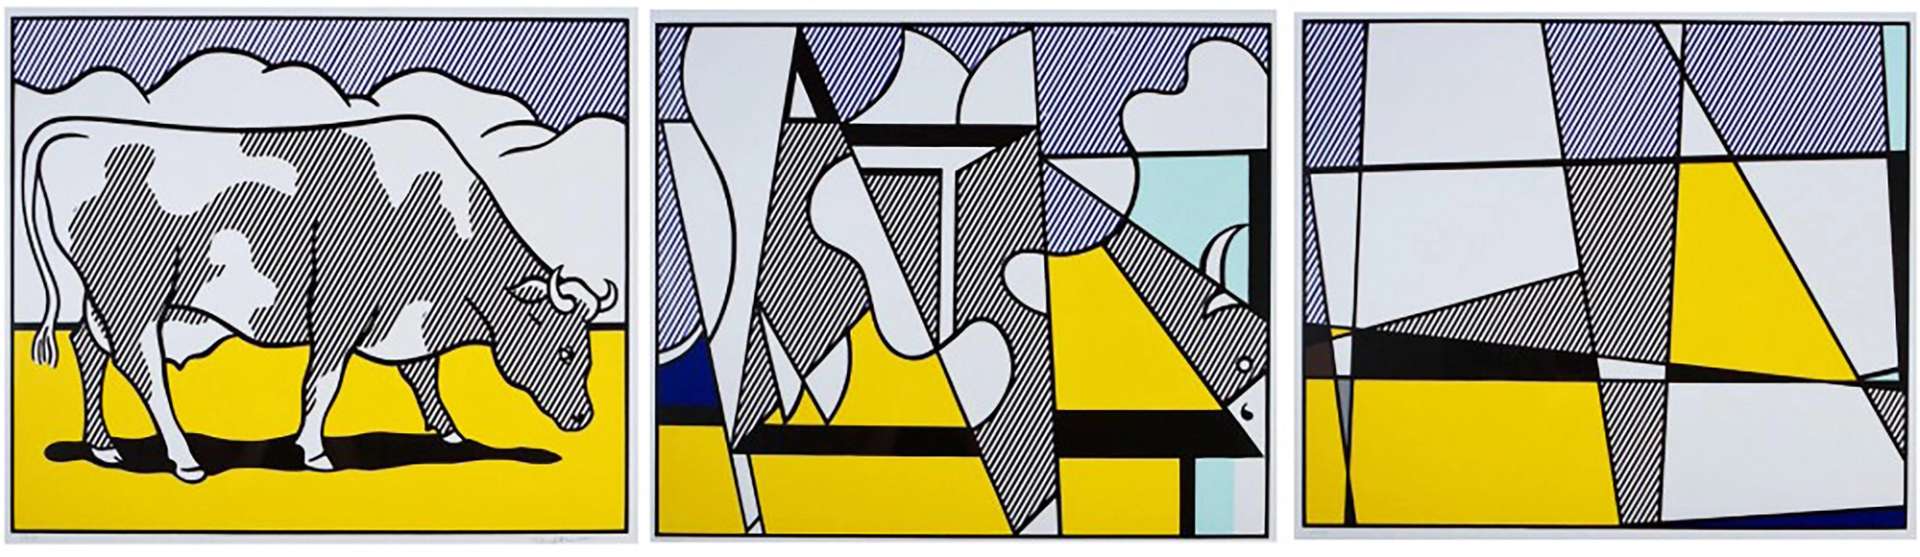 Cow Going Abstract by Roy Lichtenstein - MyArtBroker 